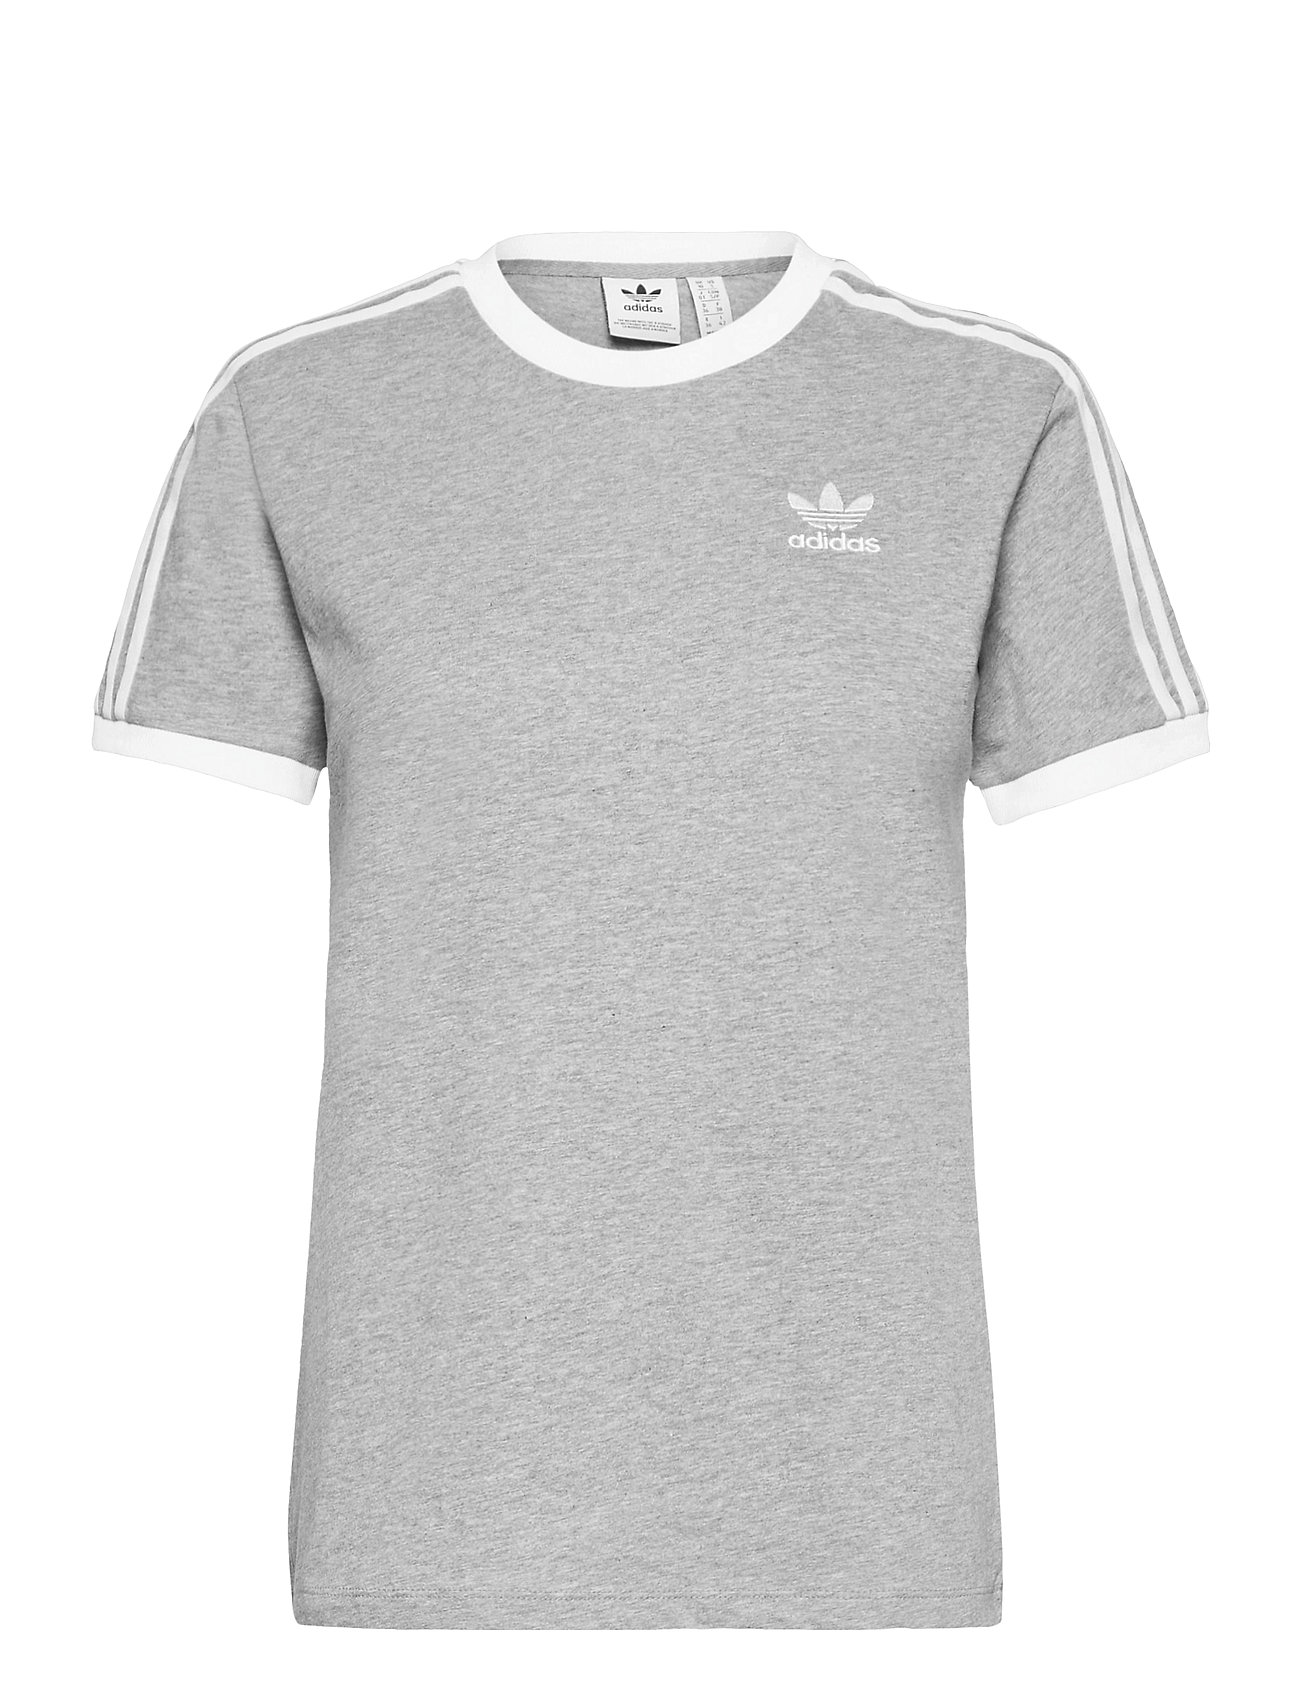 Adicolor Classics 3-Stripes T-Shirt W T-shirts & Tops Short-sleeved Harmaa Adidas Originals, adidas Originals